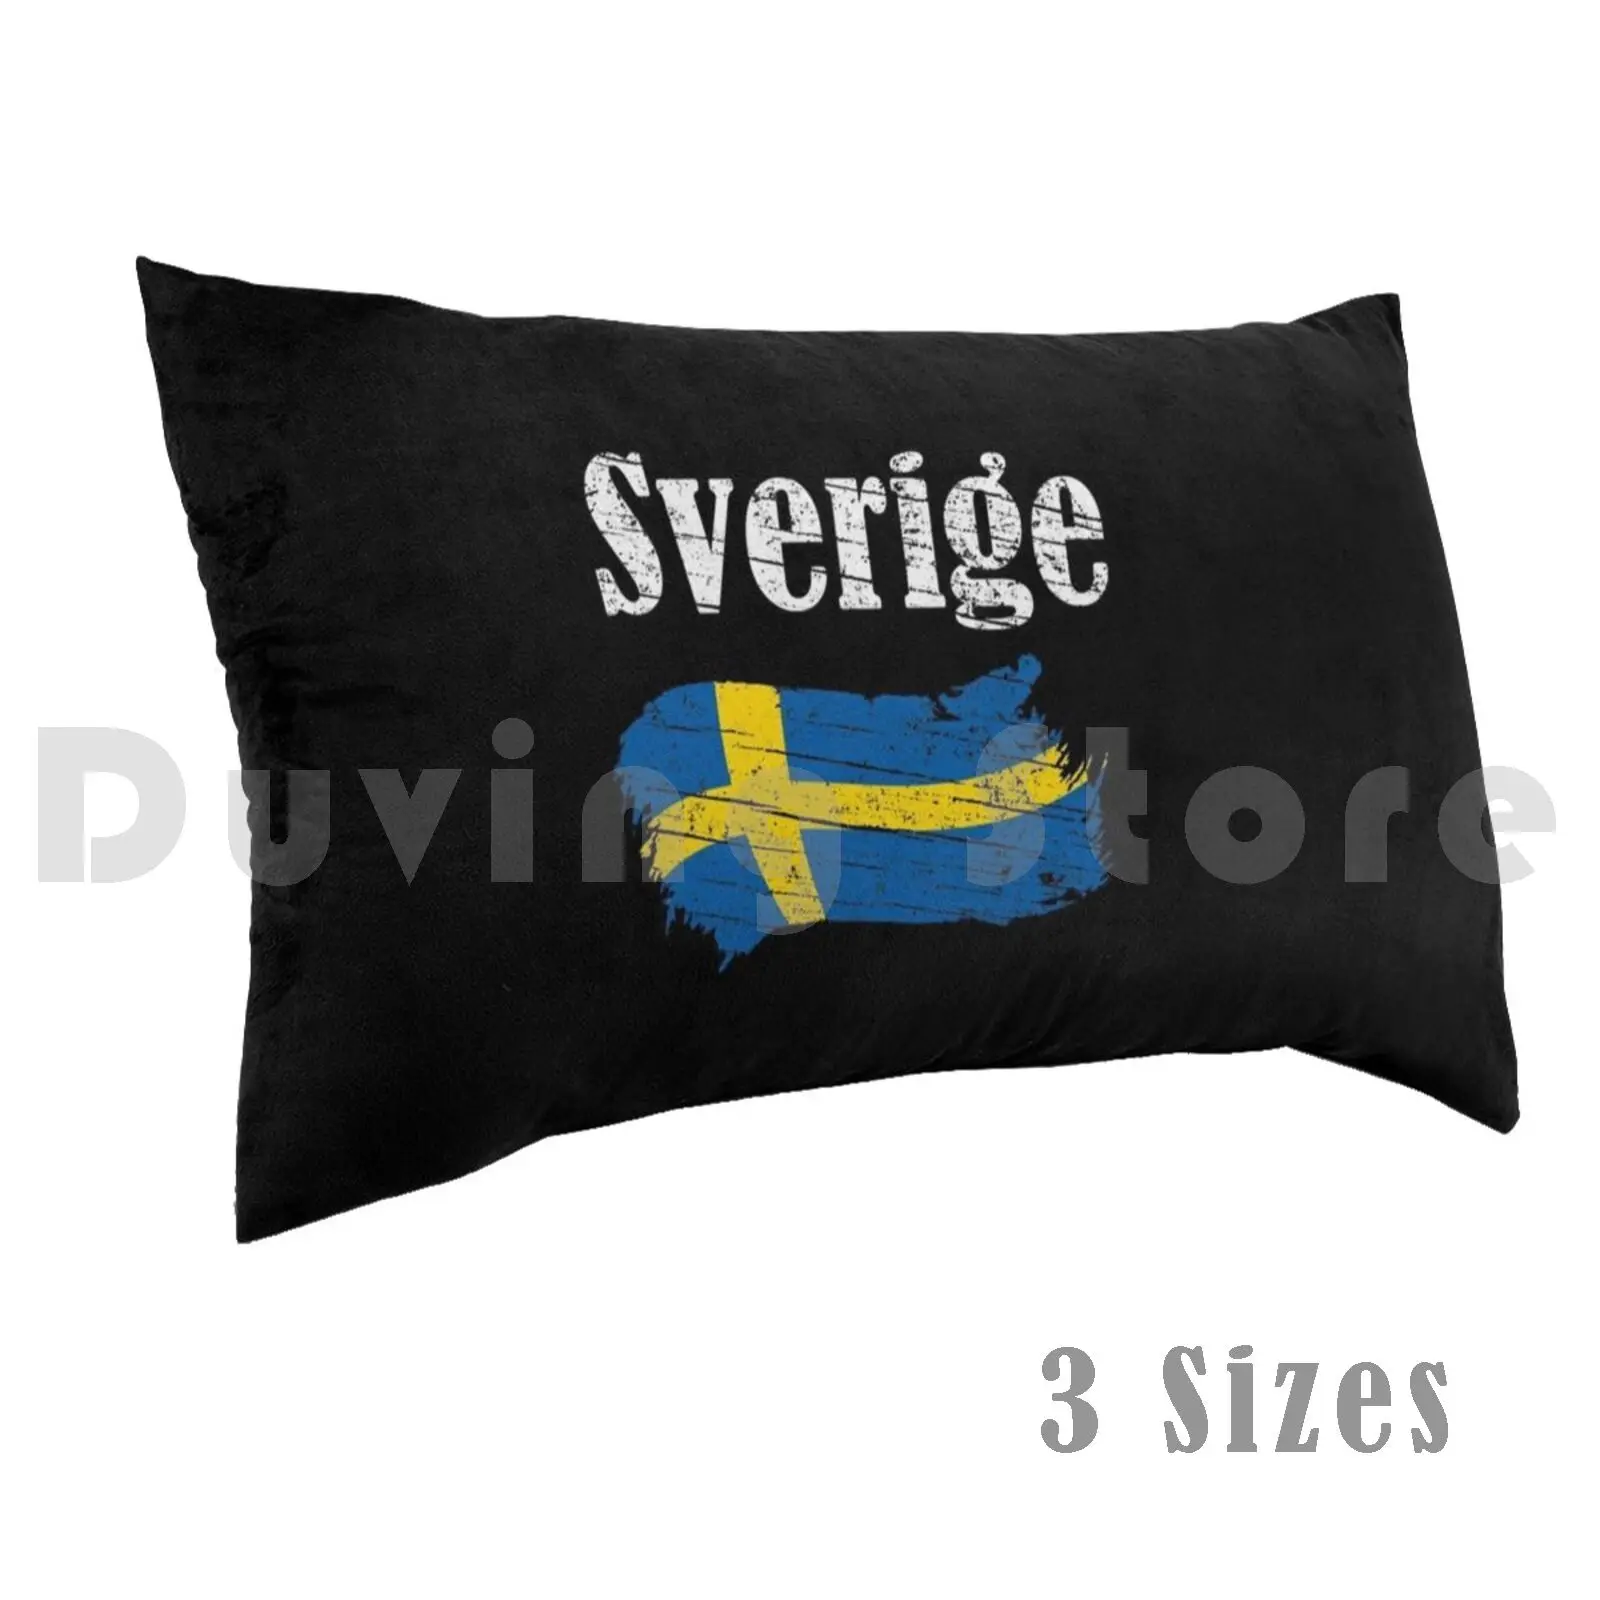 Фото Чехол-Подушка Sverige с шведским флагом винтажный Графический сувенир для